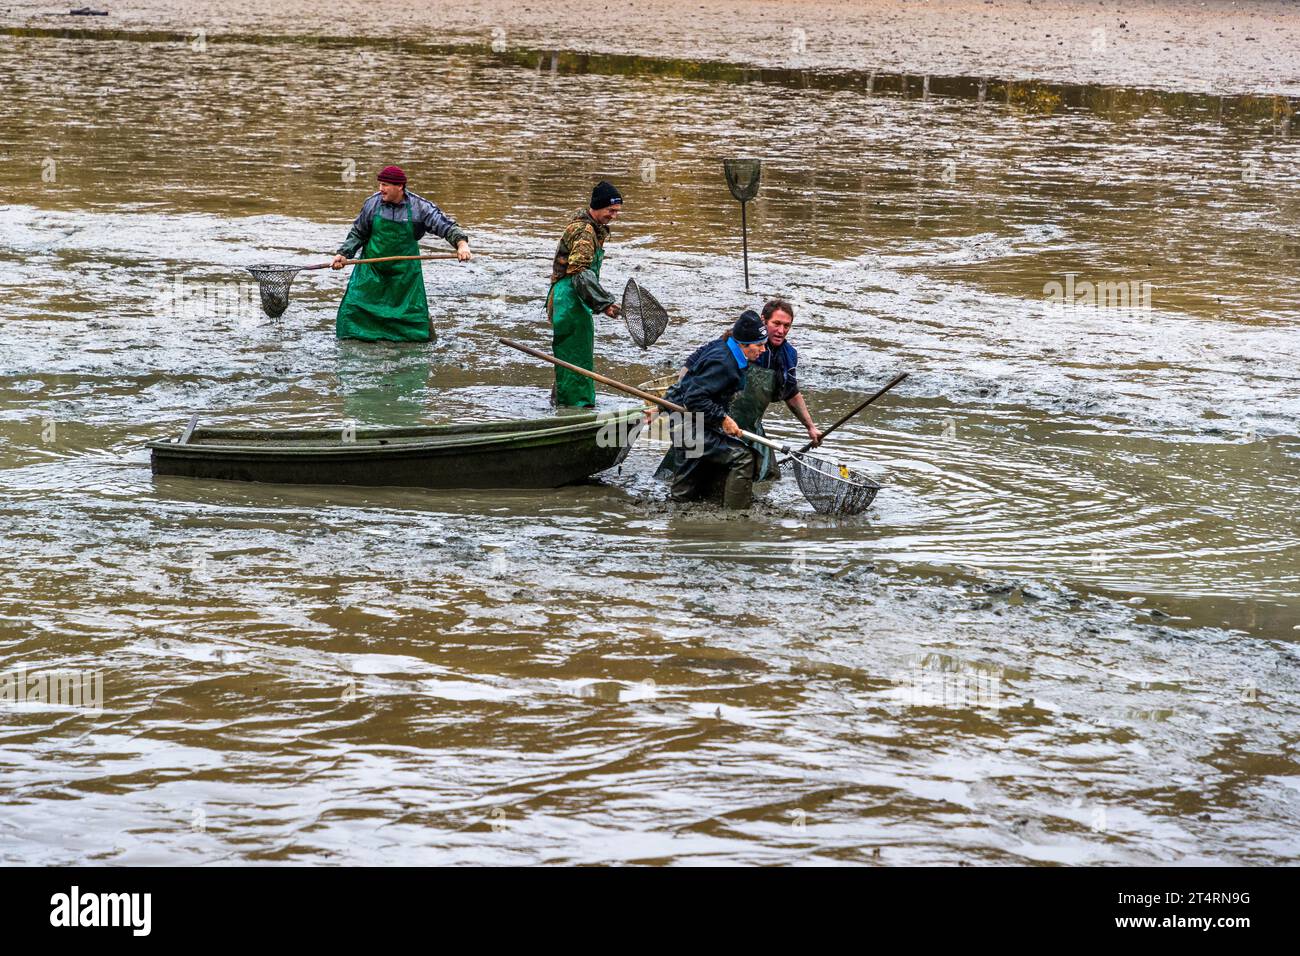 La campagna di pesca delle carpe nella regione di Tirschenreuth inizia alla fine di settembre. Sono necessari molti aiutanti per garantire che i pesci possano essere prelevati rapidamente dallo stagno e nelle vasche di contenimento. Wiesau (VGem), Germania Foto Stock